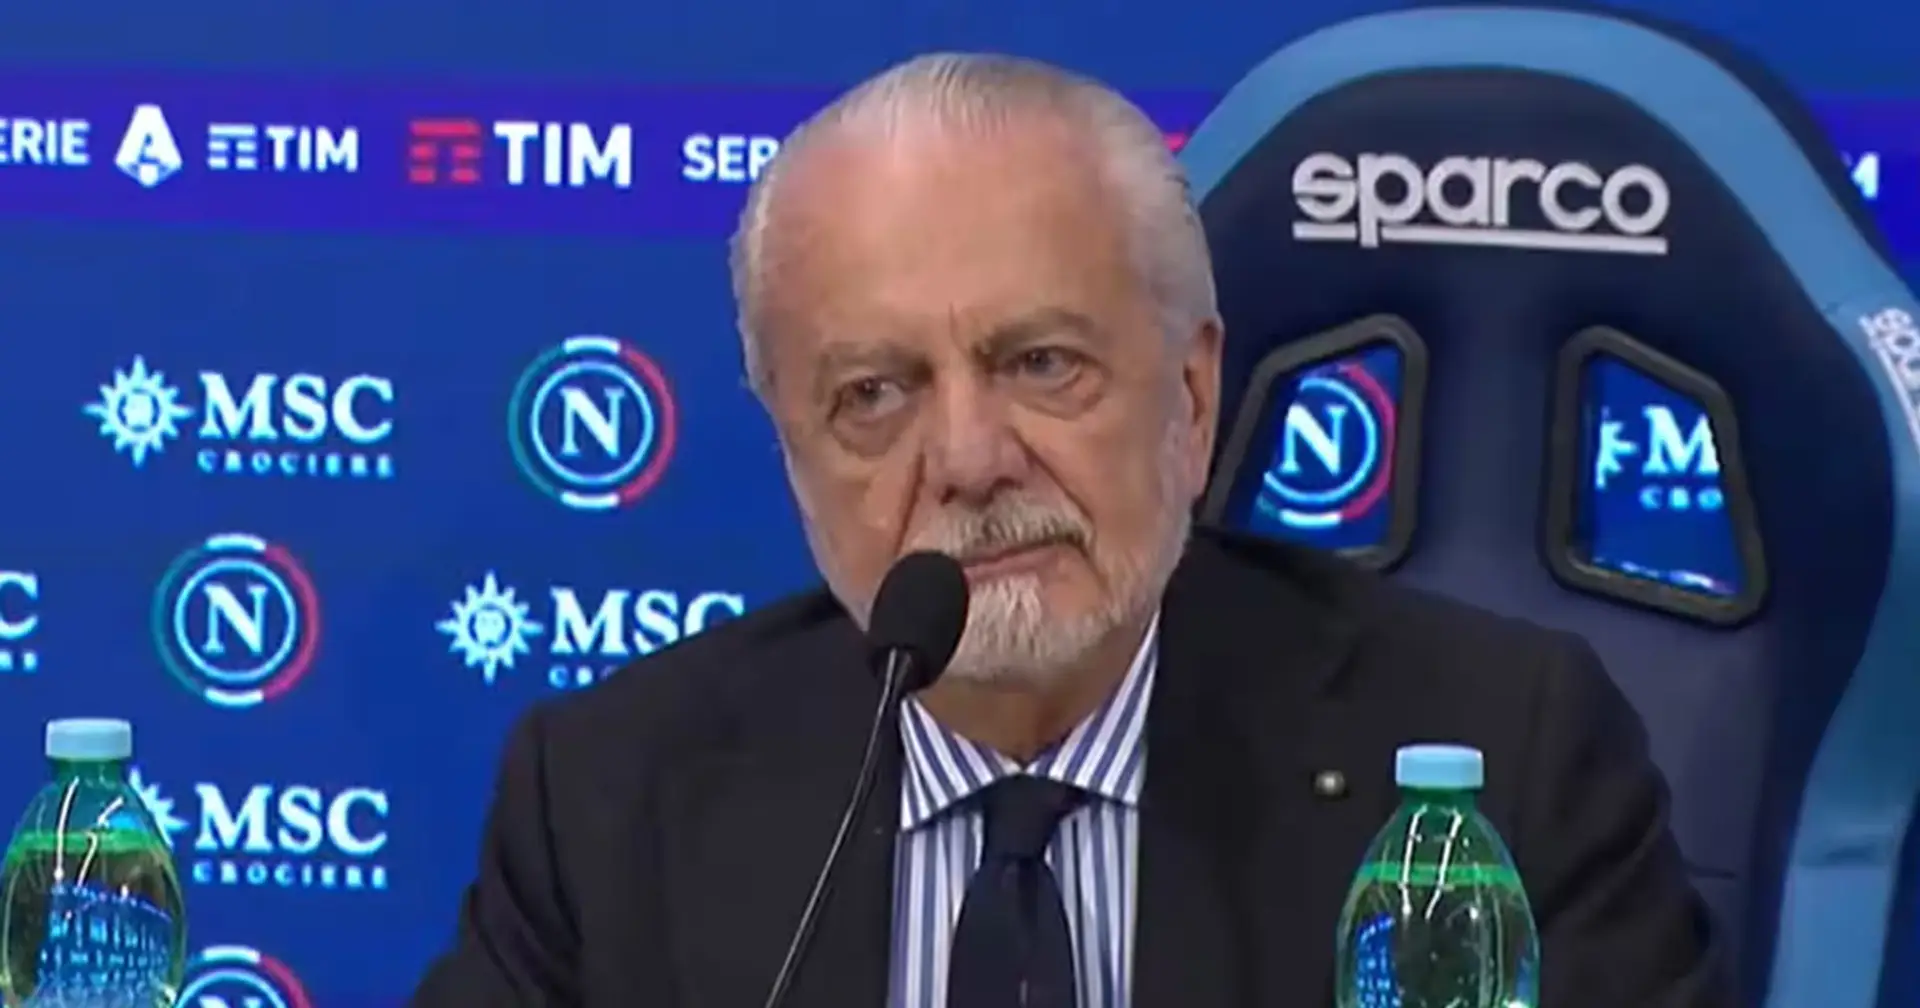 Il presidente del Napoli si assume la responsabilità per la stagione disastrosa degli Azzurri: "Mi assumo la responsabilità"